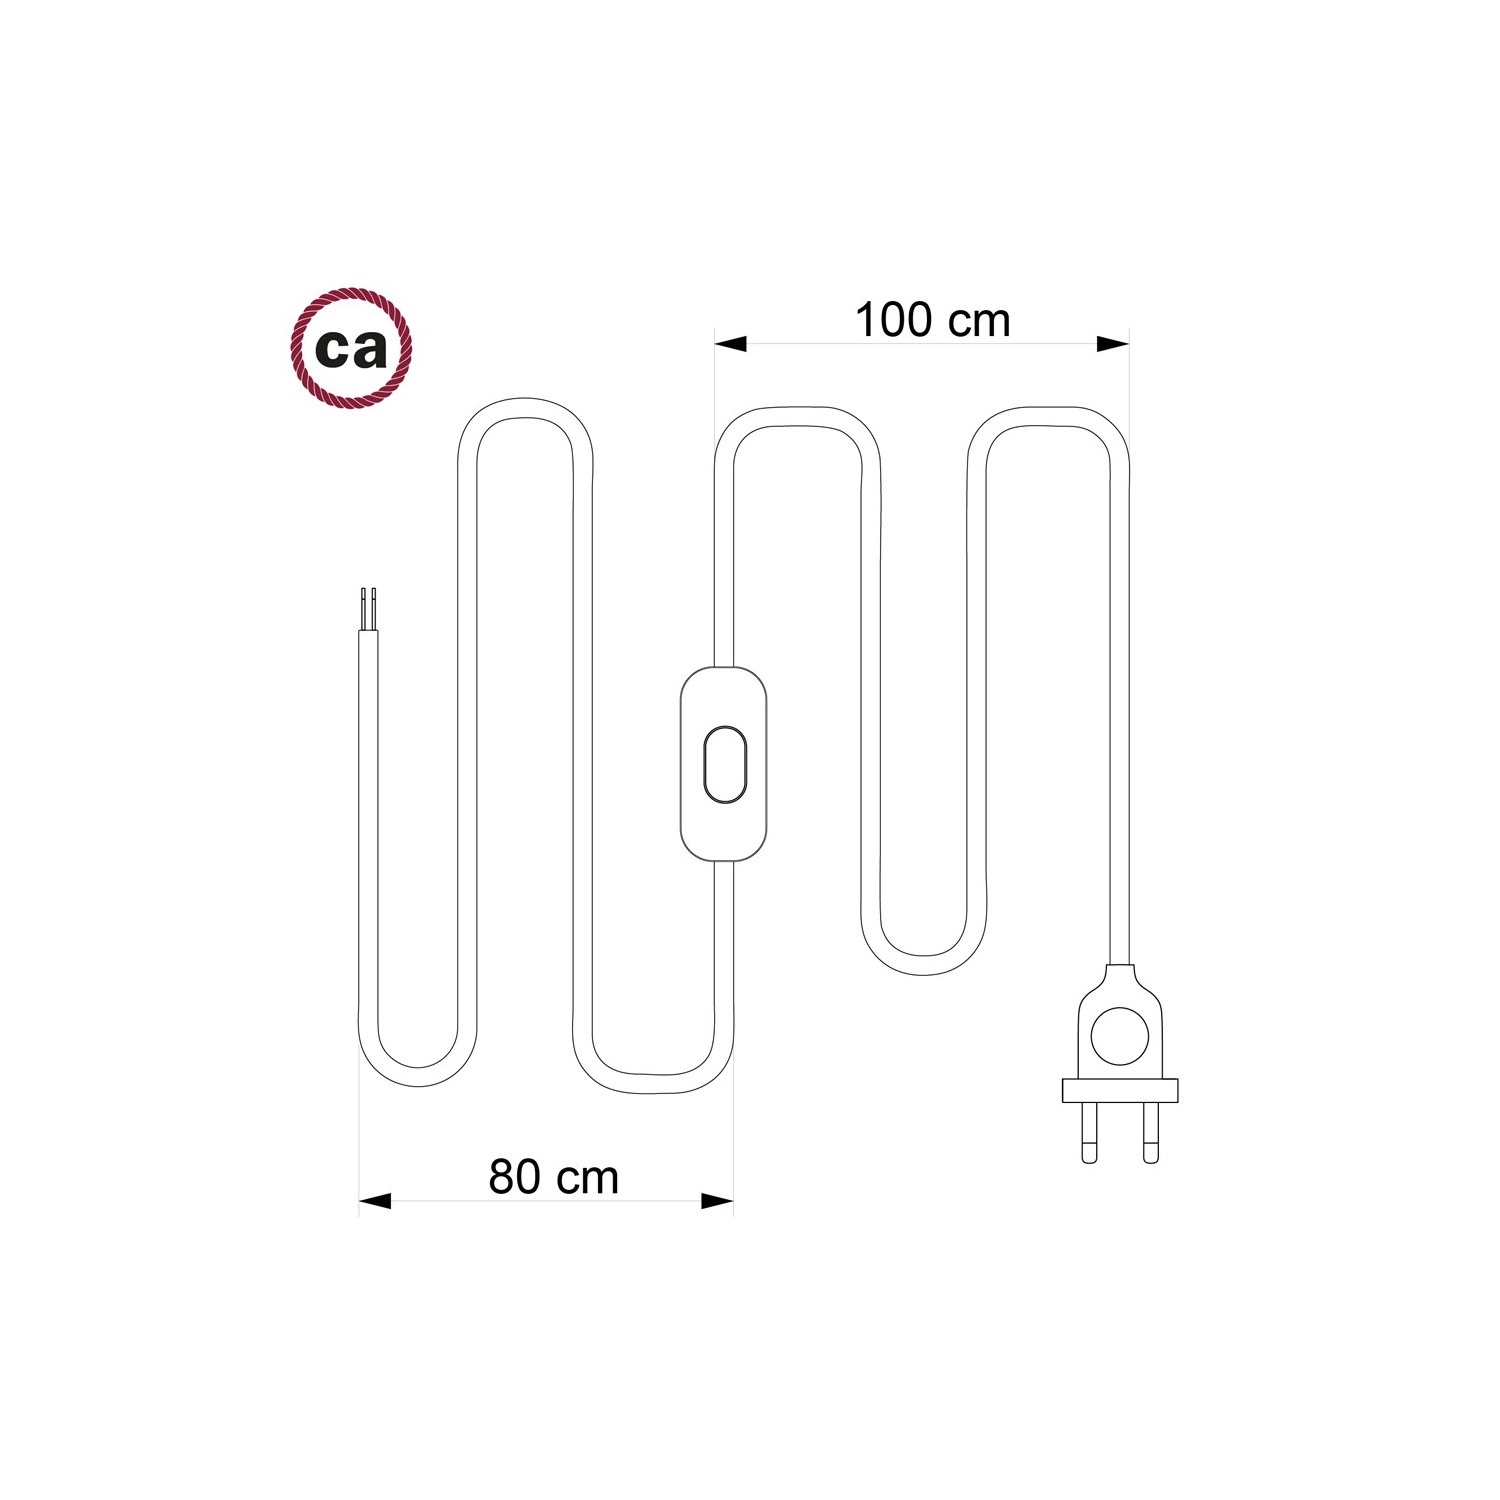 Cordon pour lampe, câble TM04 Effet Soie Noir 1,80 m. Choisissez la couleur de la fiche et de l'interrupteur!